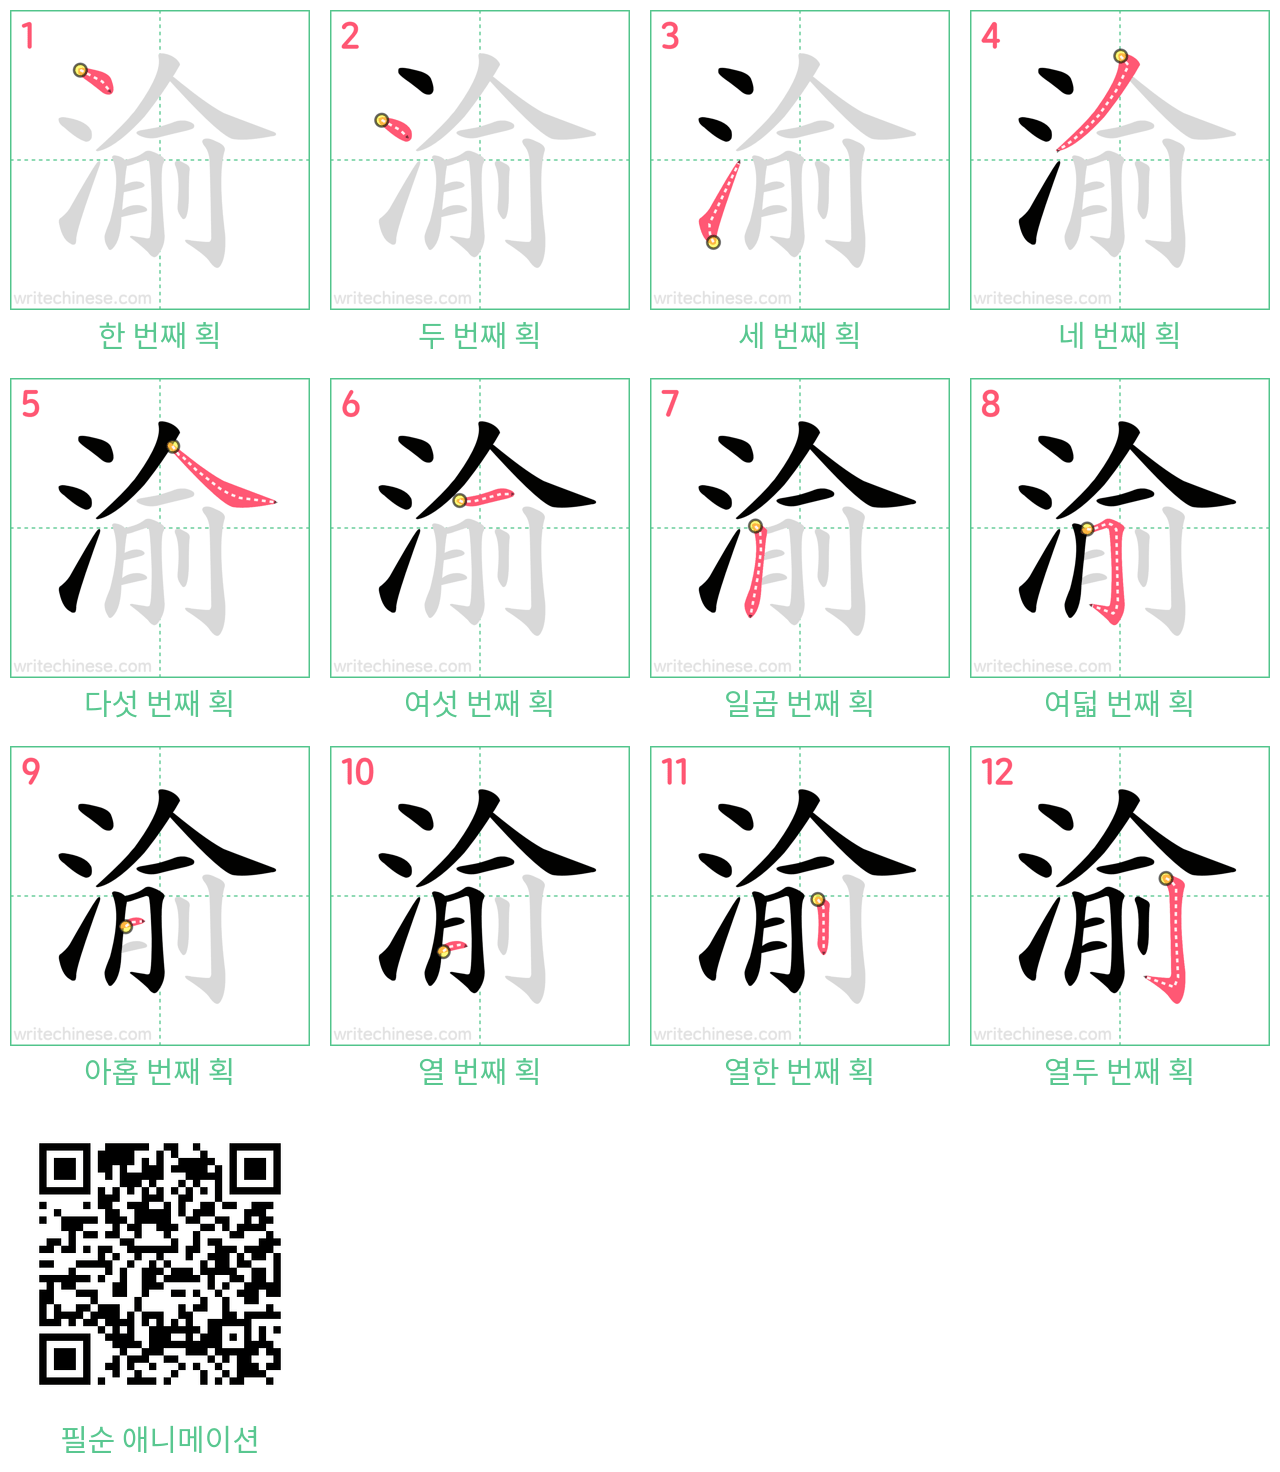 渝 step-by-step stroke order diagrams